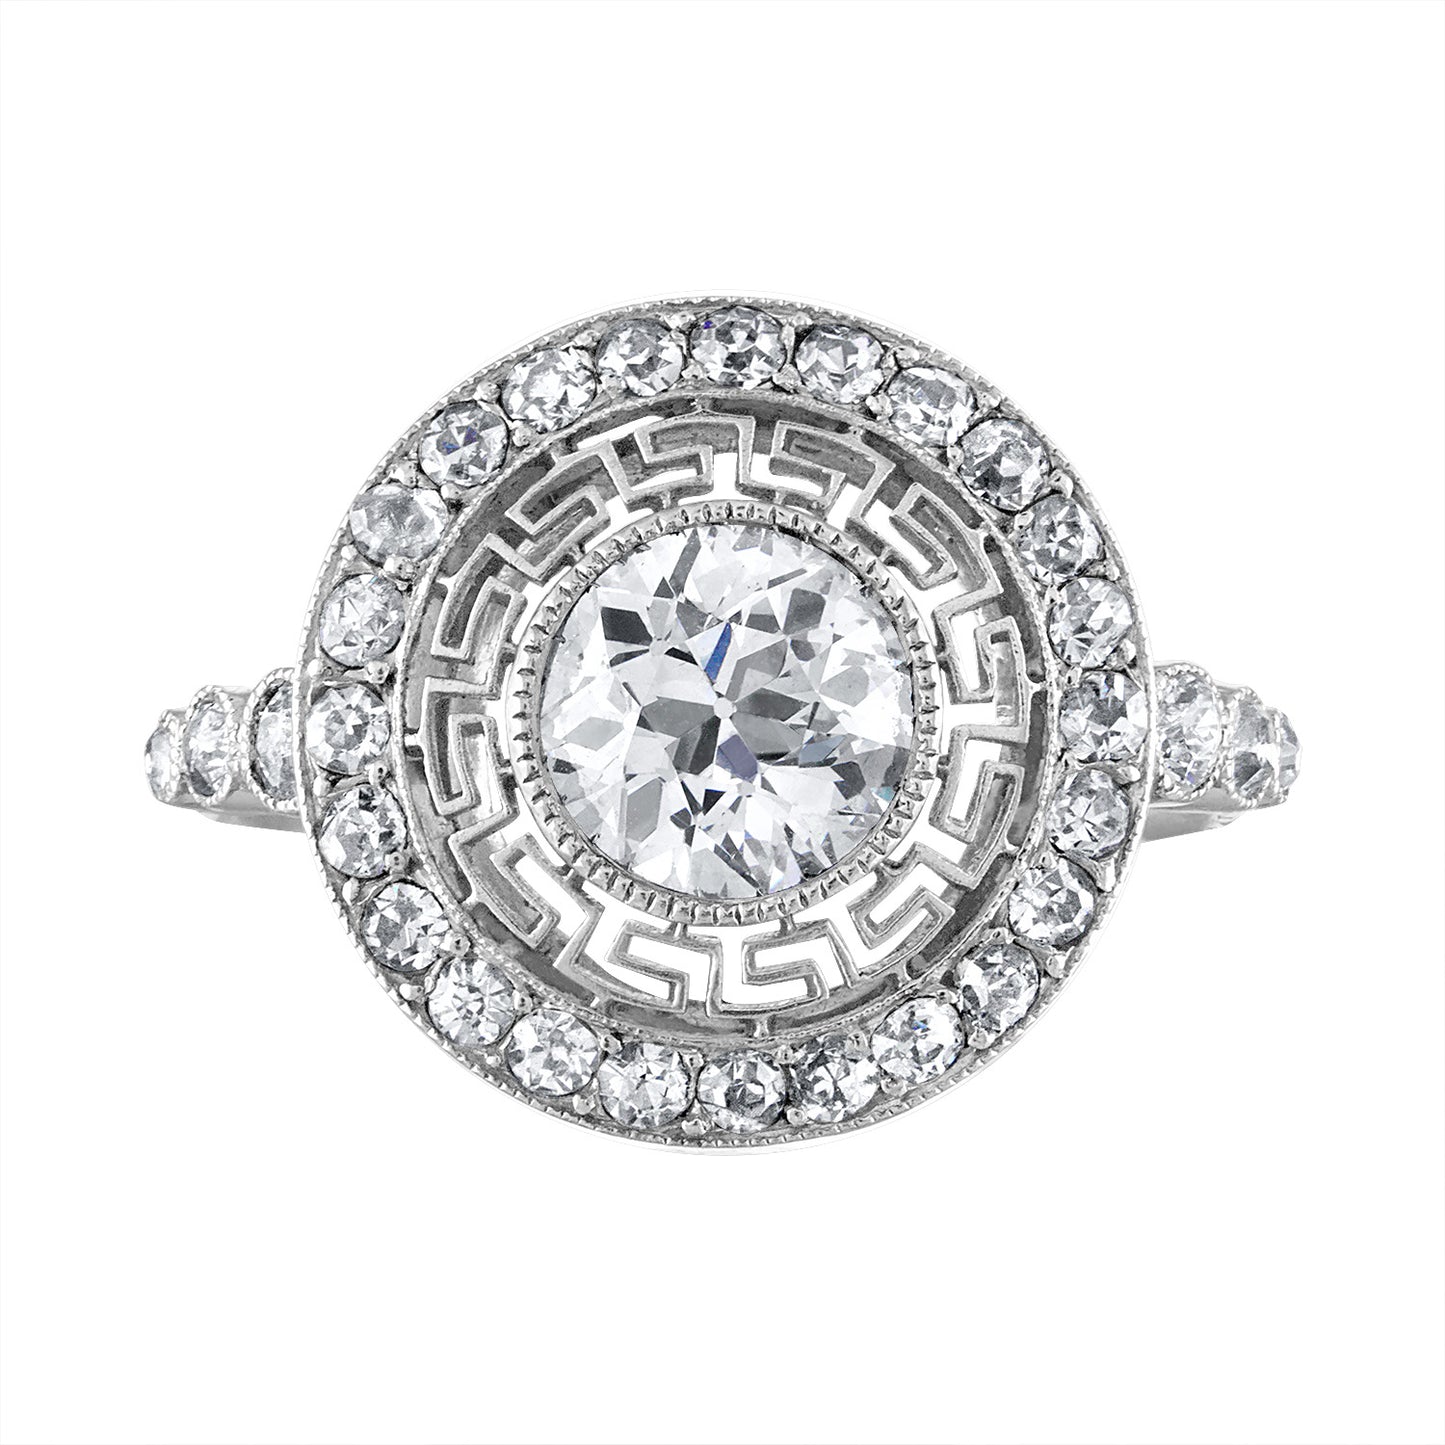 Diamond "Greek Key" Ring